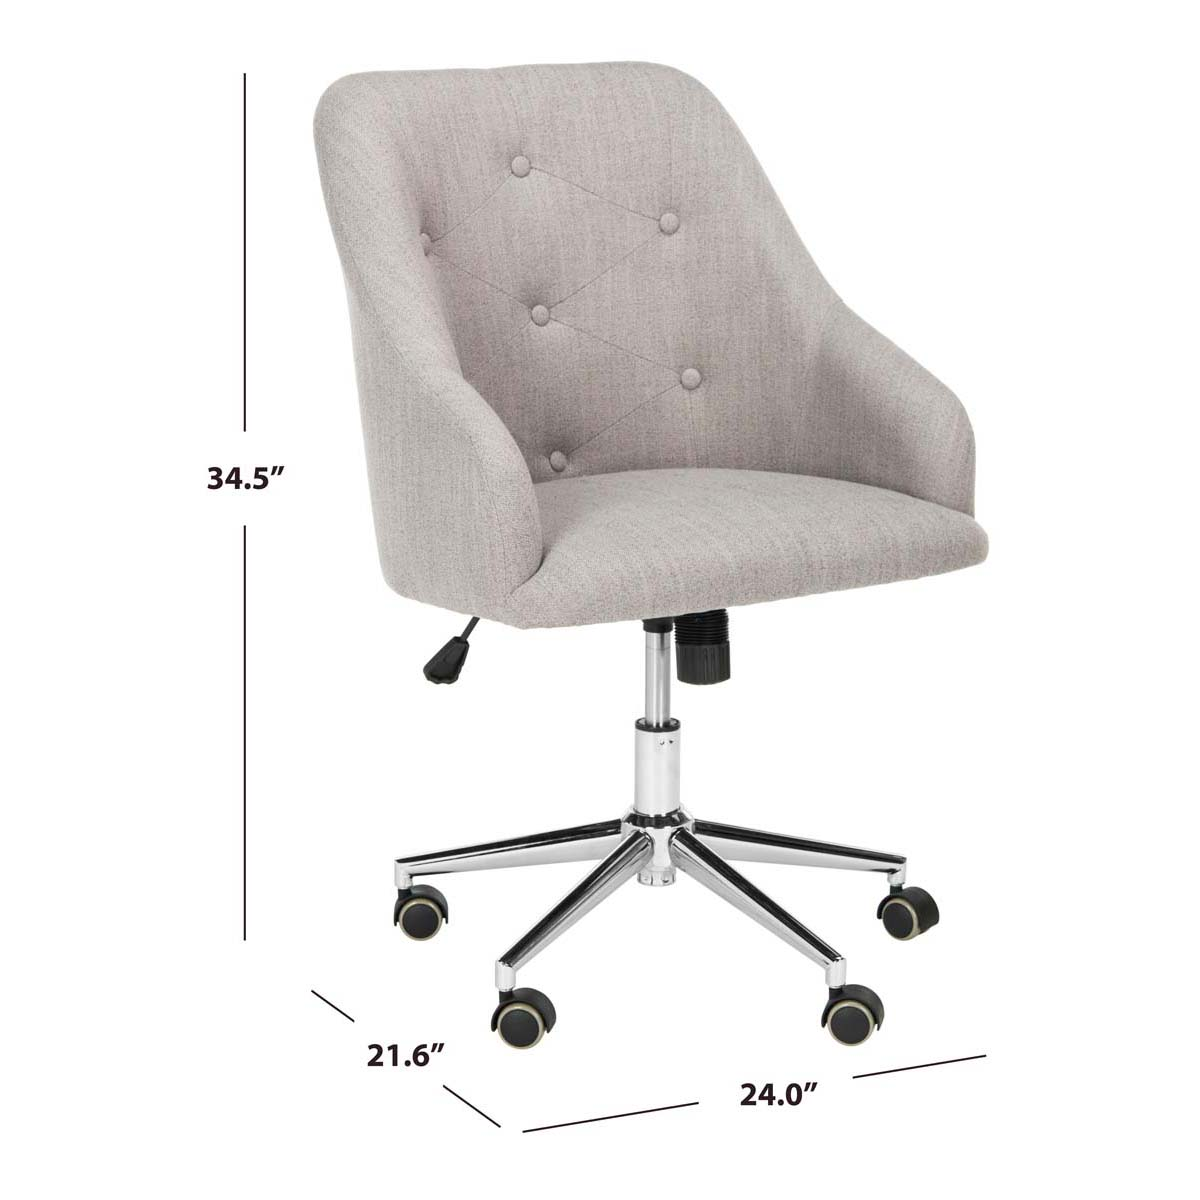 Safavieh Evelynn Tufted Linen Chrome Leg Swivel Office Chair , OCH4502